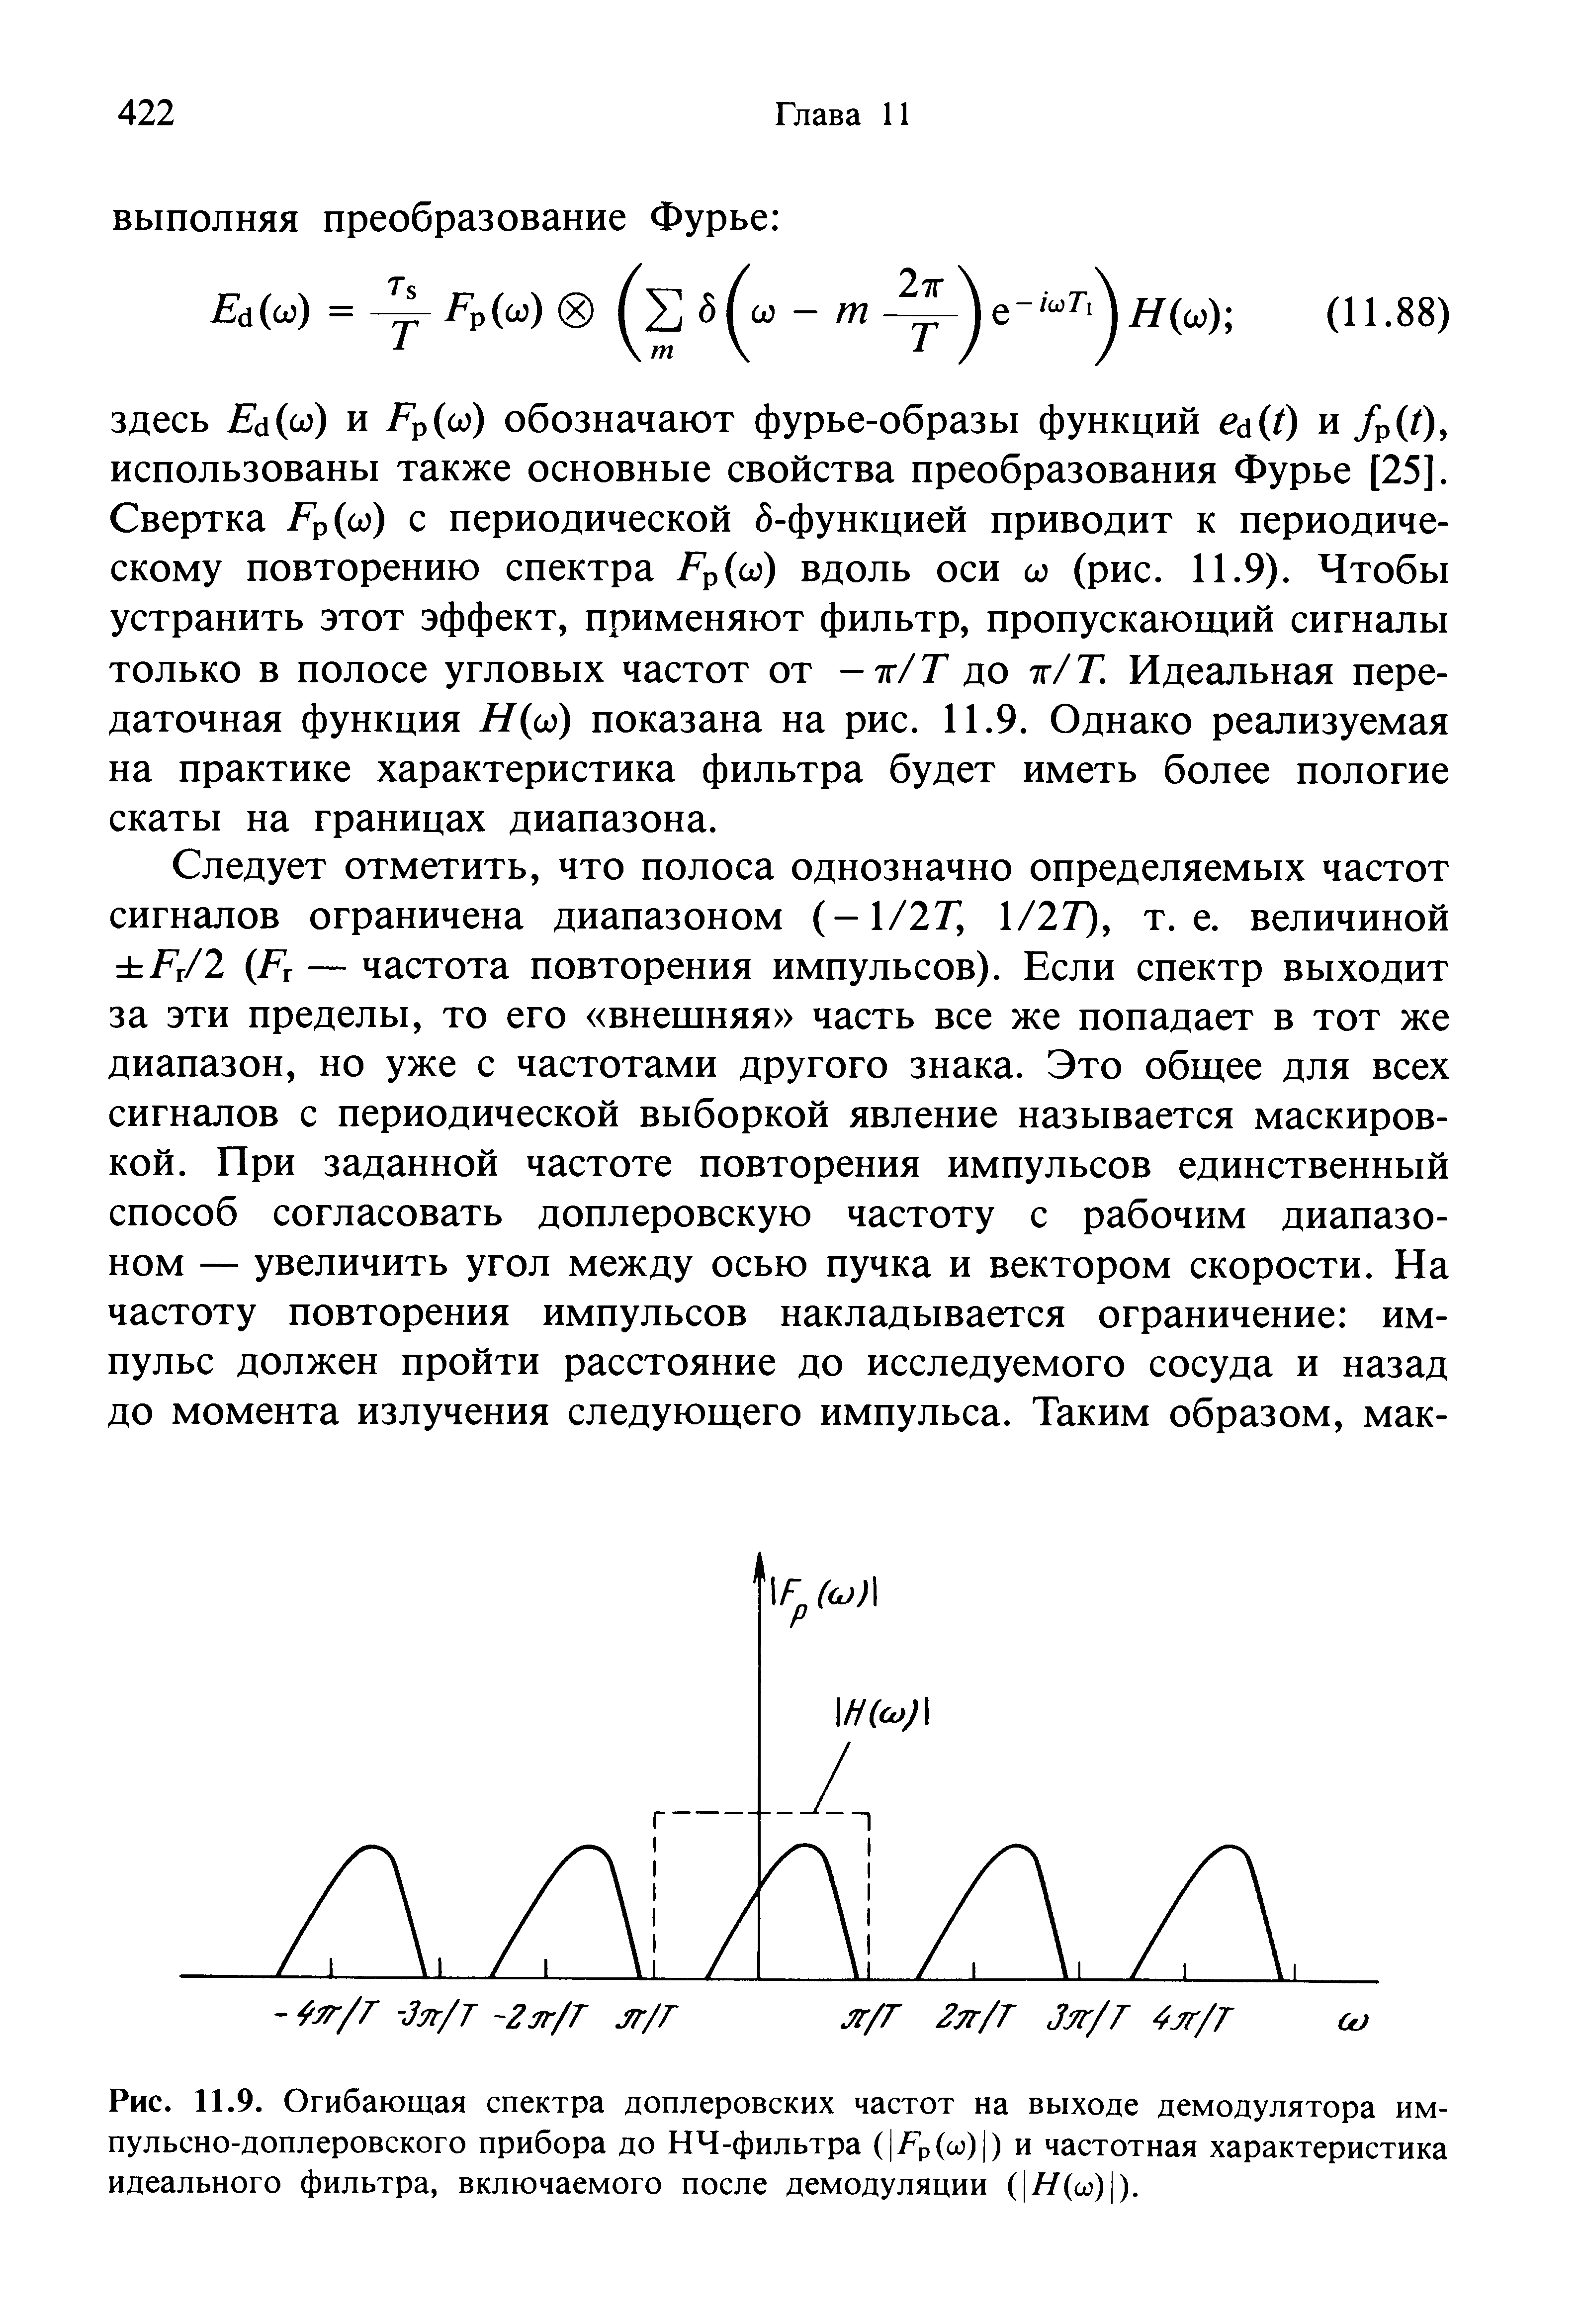 Рис. 11.9. Огибающая спектра доплеровских частот на выходе демодулятора импульсно-доплеровского прибора до НЧ-фильтра ( 7гр(со) ) и частотная характеристика идеального фильтра, включаемого после демодуляции ( Н(ы) ).